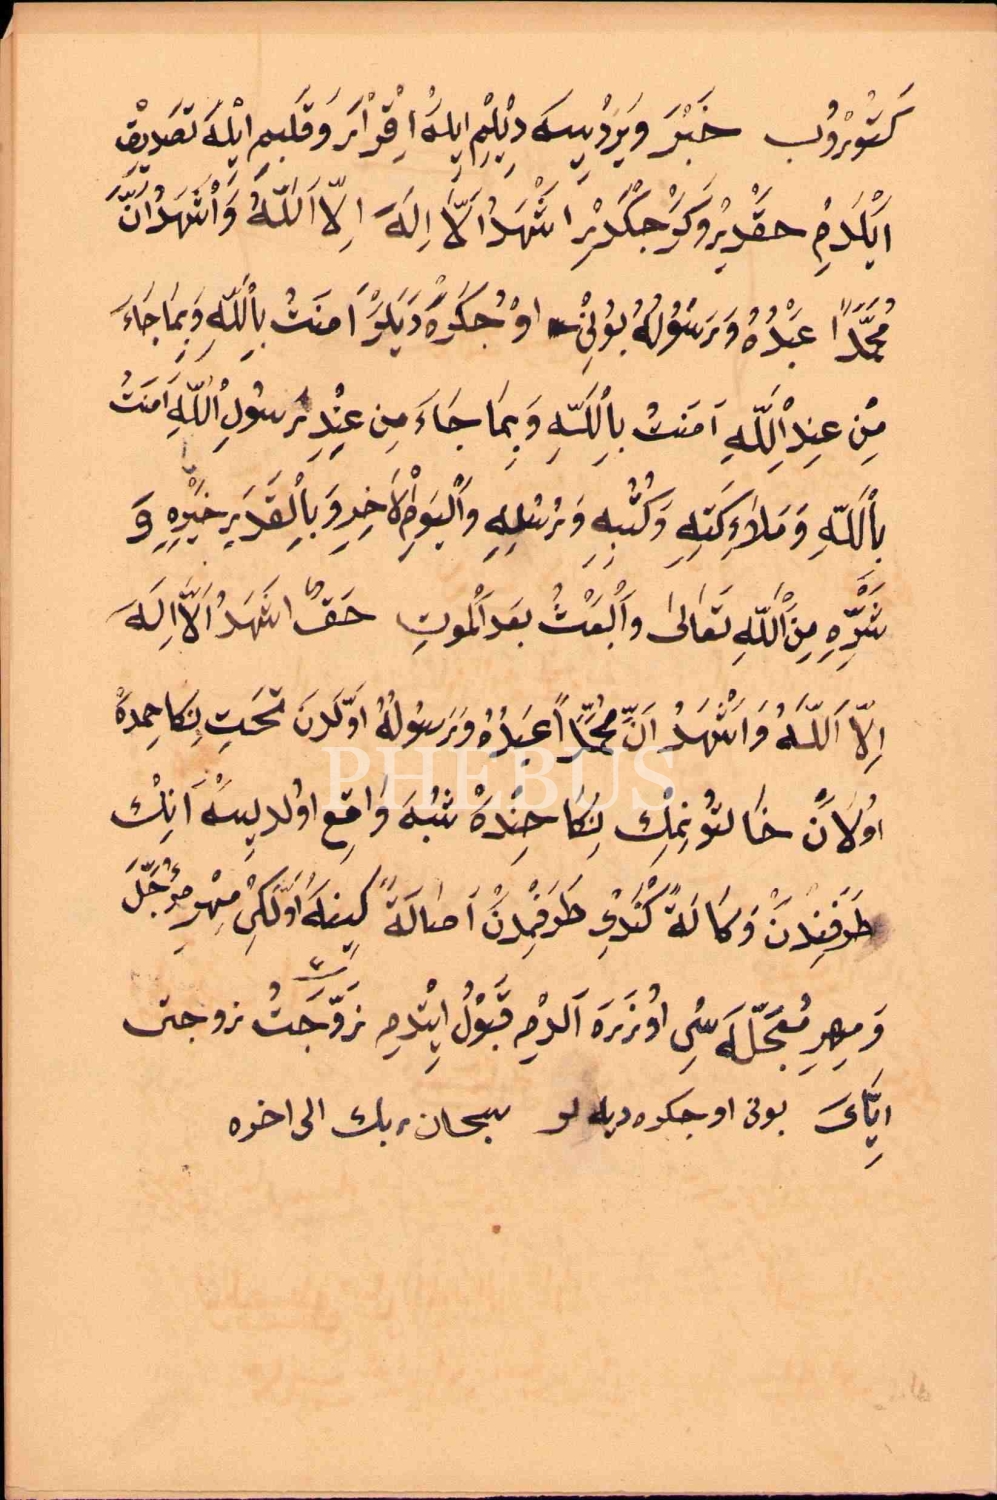 Osmanlıca-Arapça dua kâğıtları, 6 sayfa, 14x21 cm